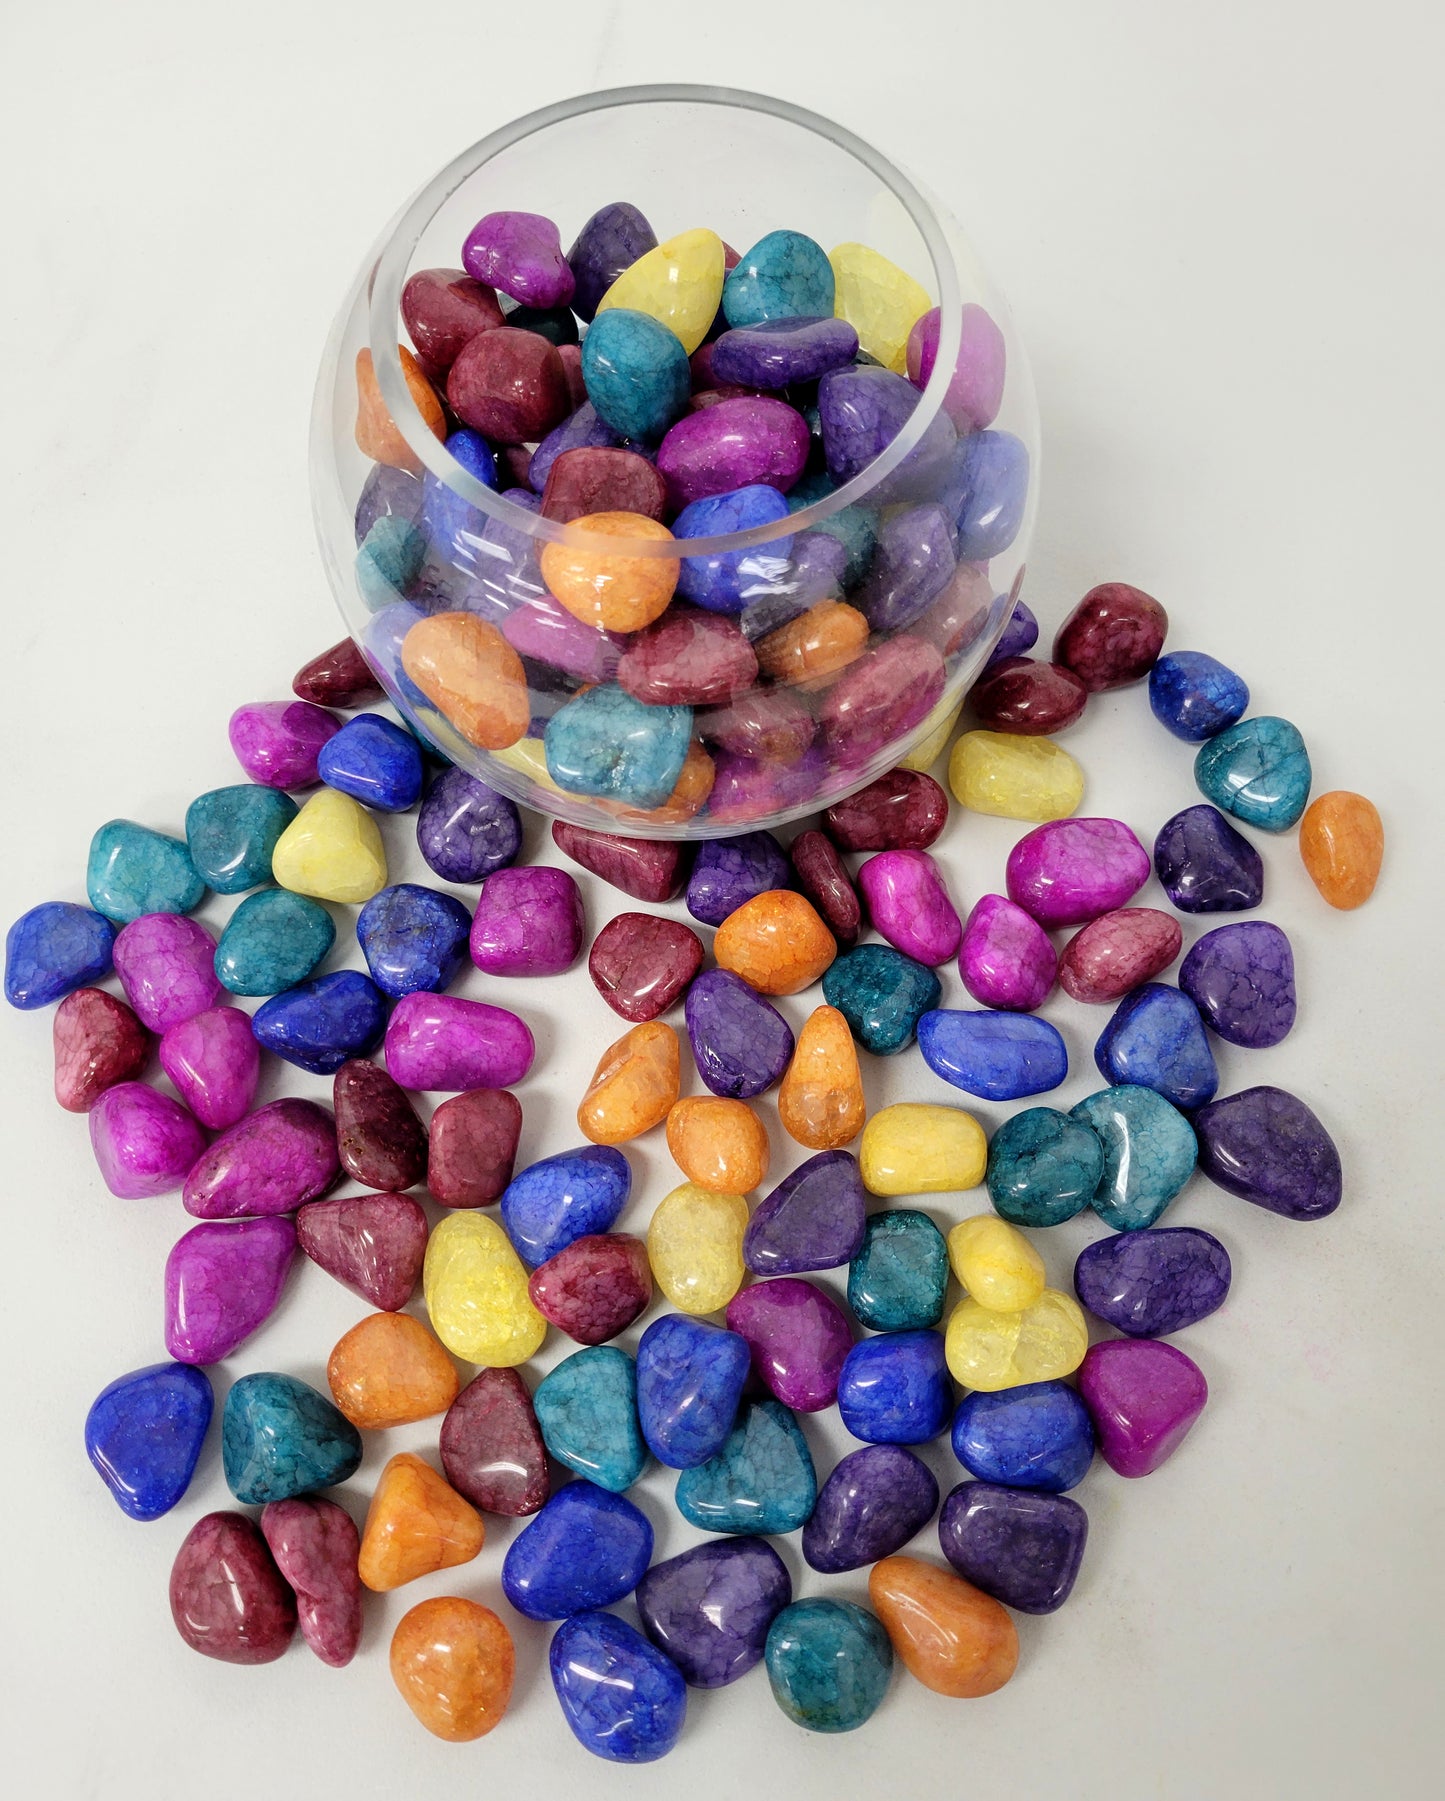 Crackled Quartz Crystals - Mixed Tumbled Stones Bulk